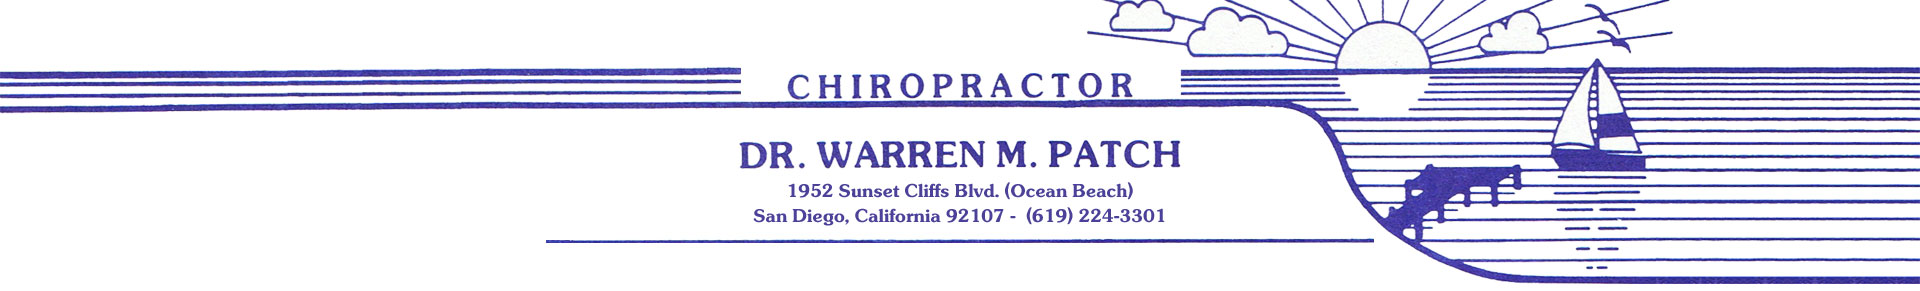 Dr. Warren M. Patch - Chiropractor, Ocean Beach, CA